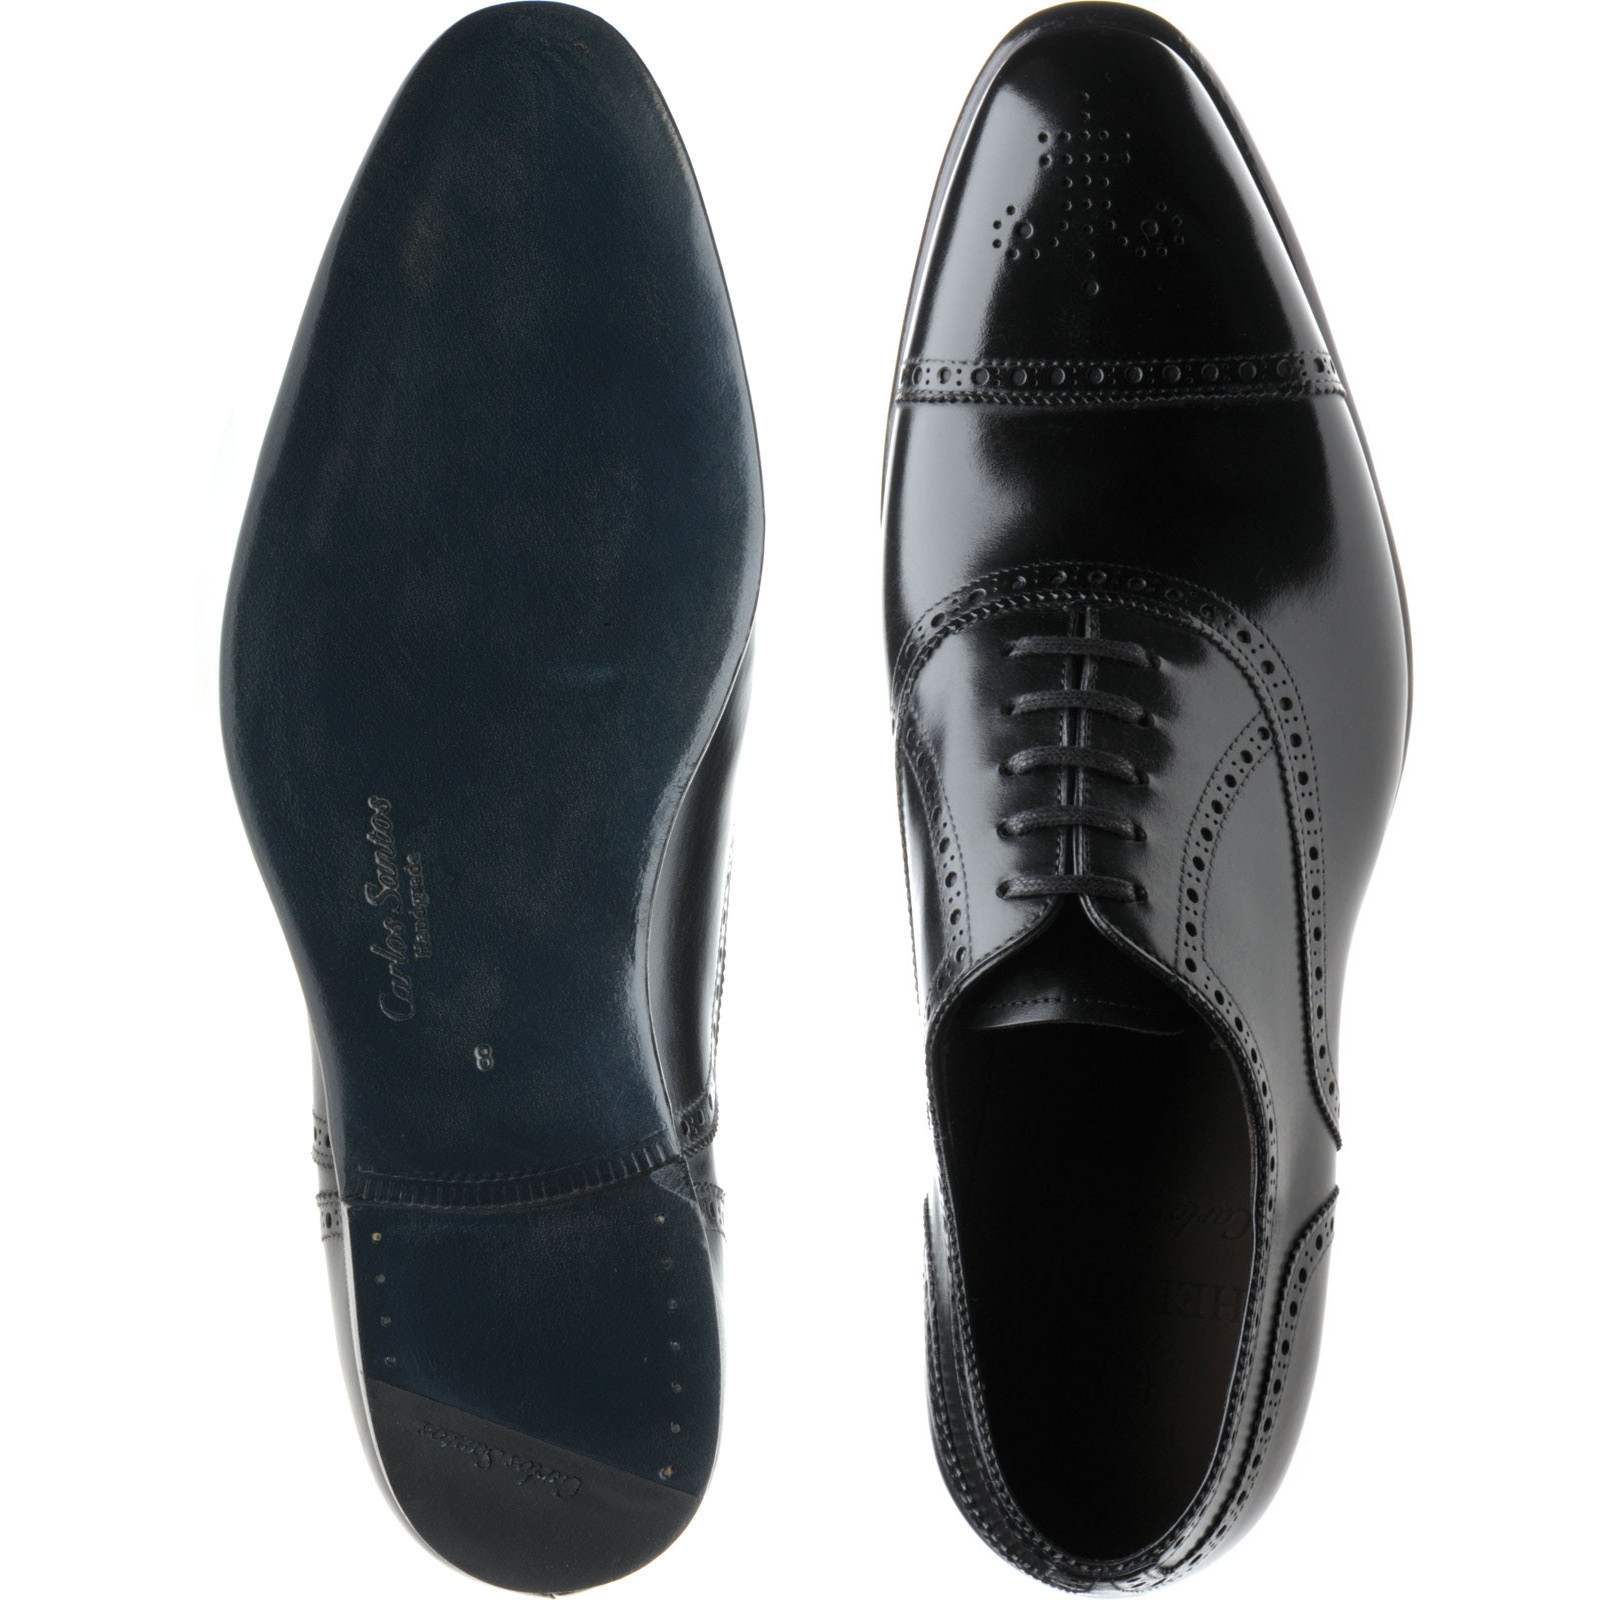 Herring shoes | Herring Handgrade | Sloane semi-brogues in Black Calf ...